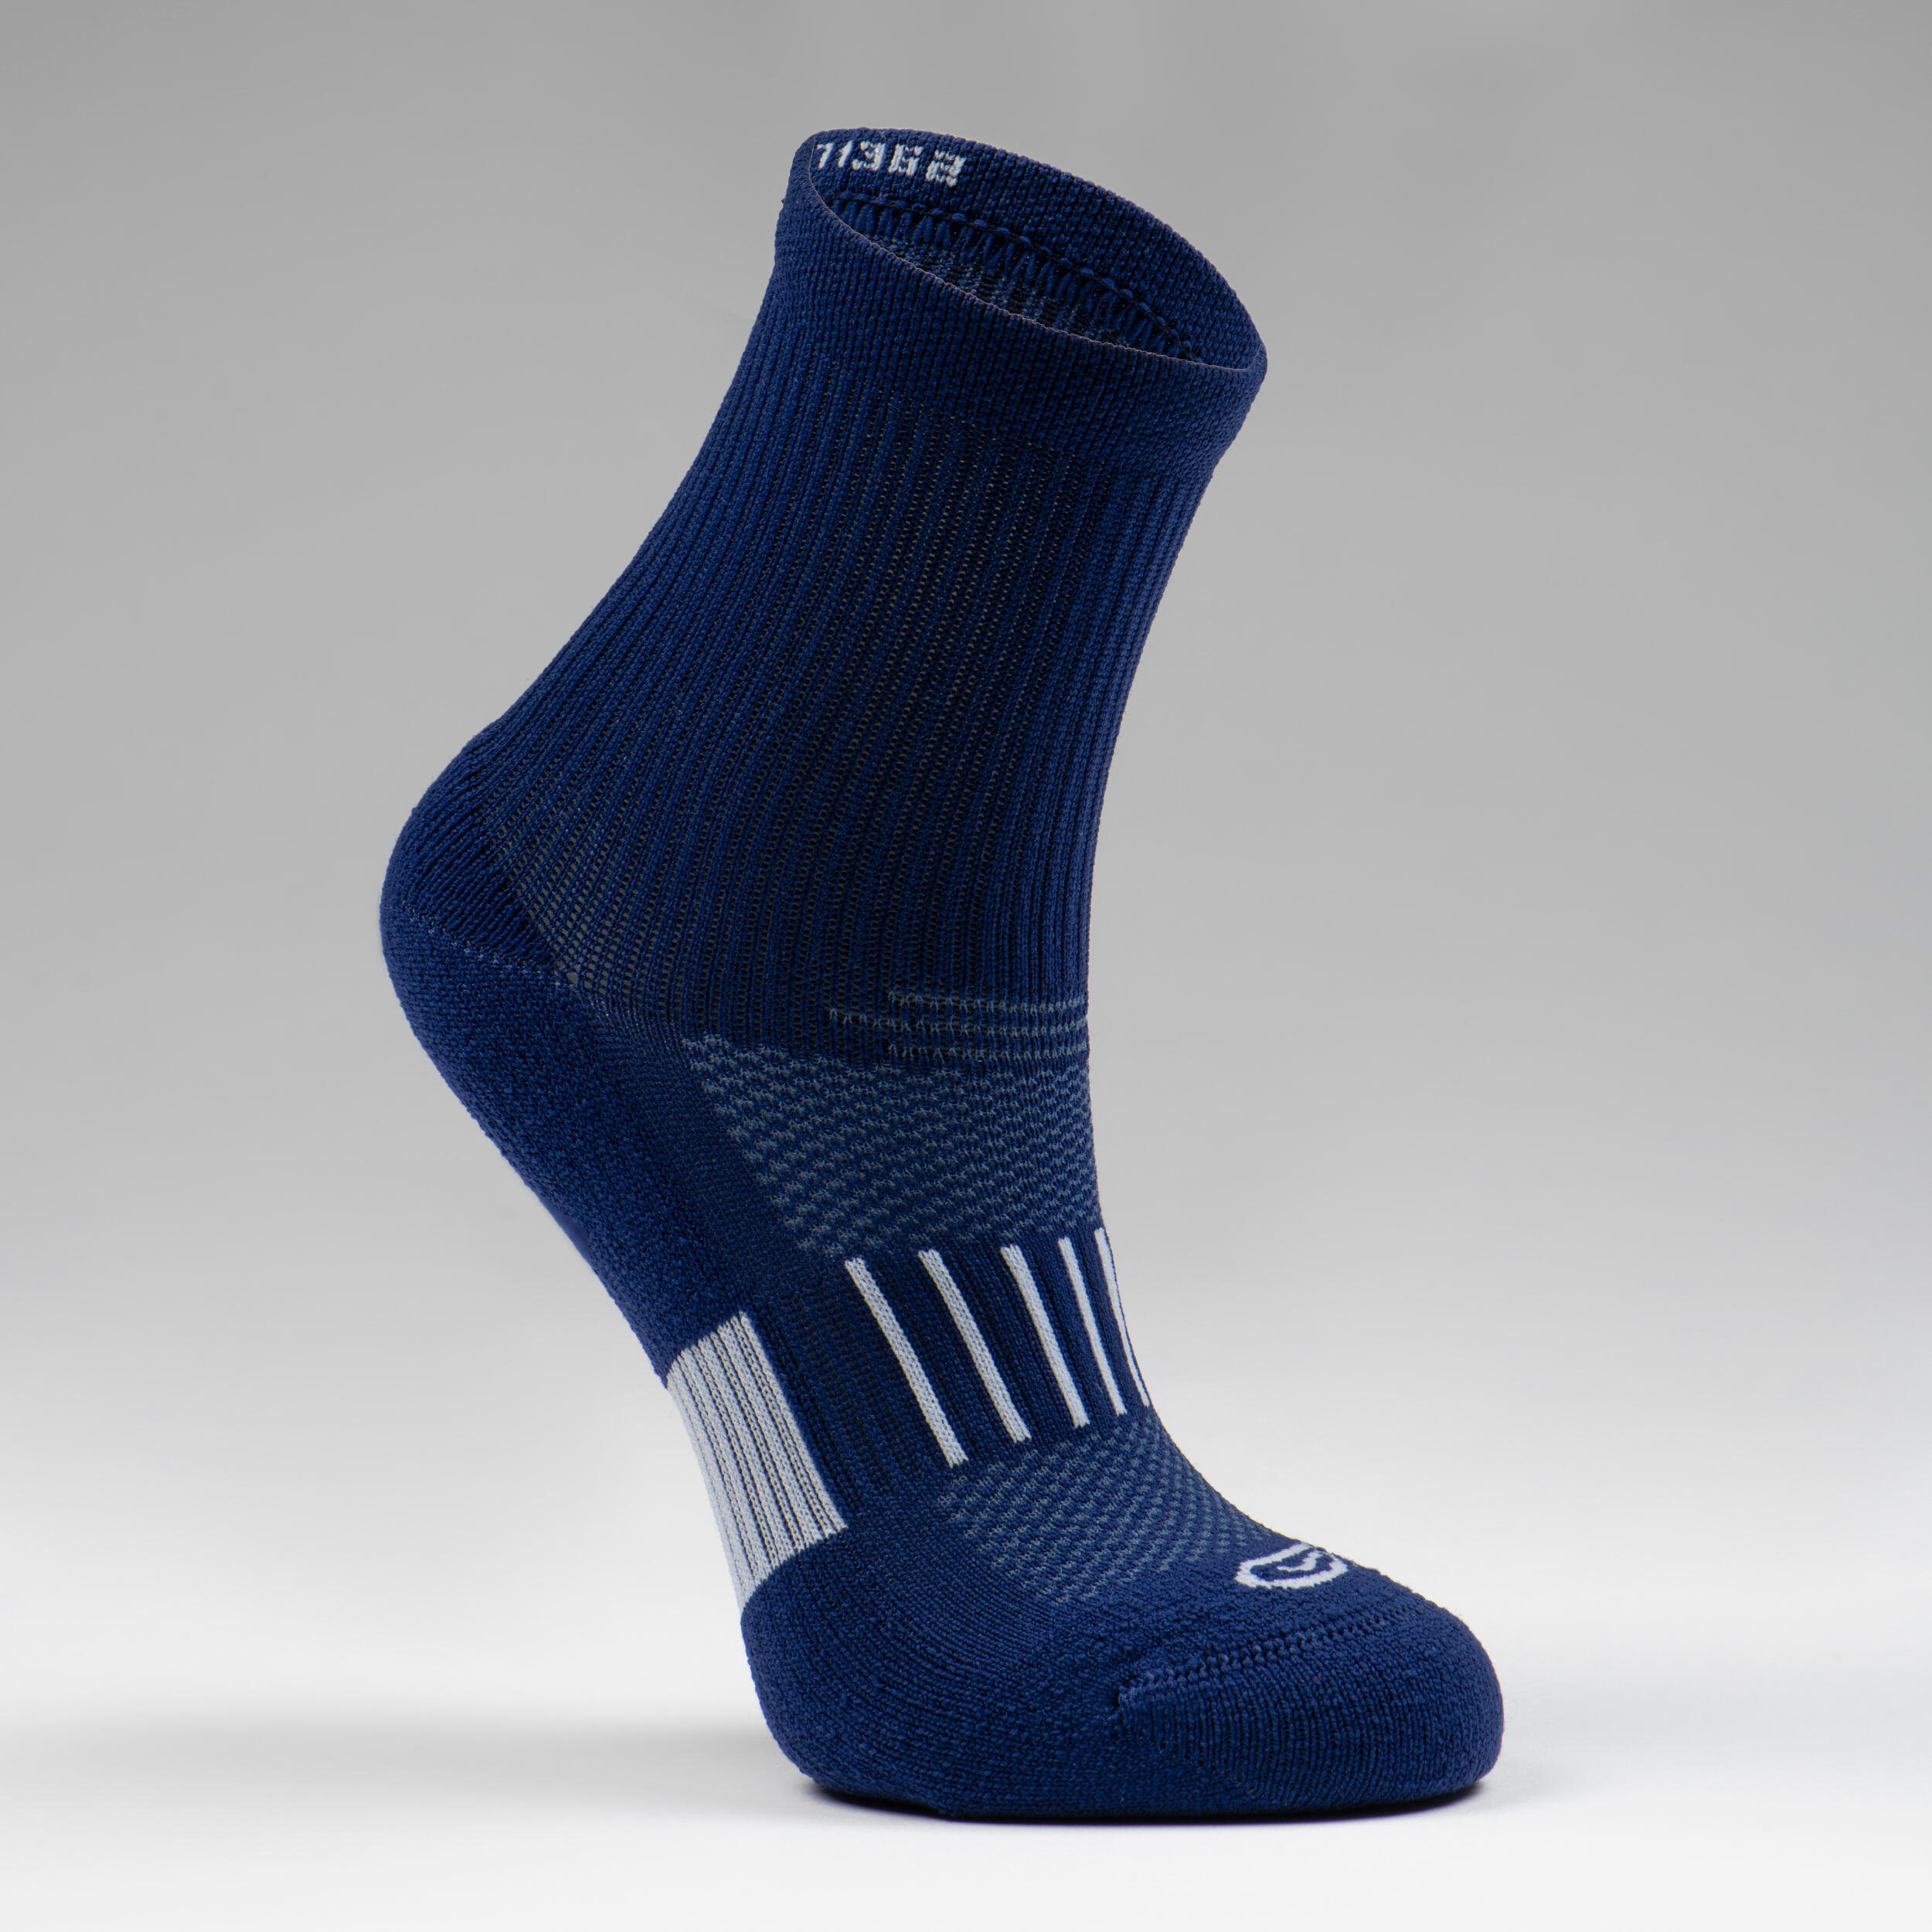 KIPRUN 500 MID kids' running socks 2-pack - navy blue 2/5